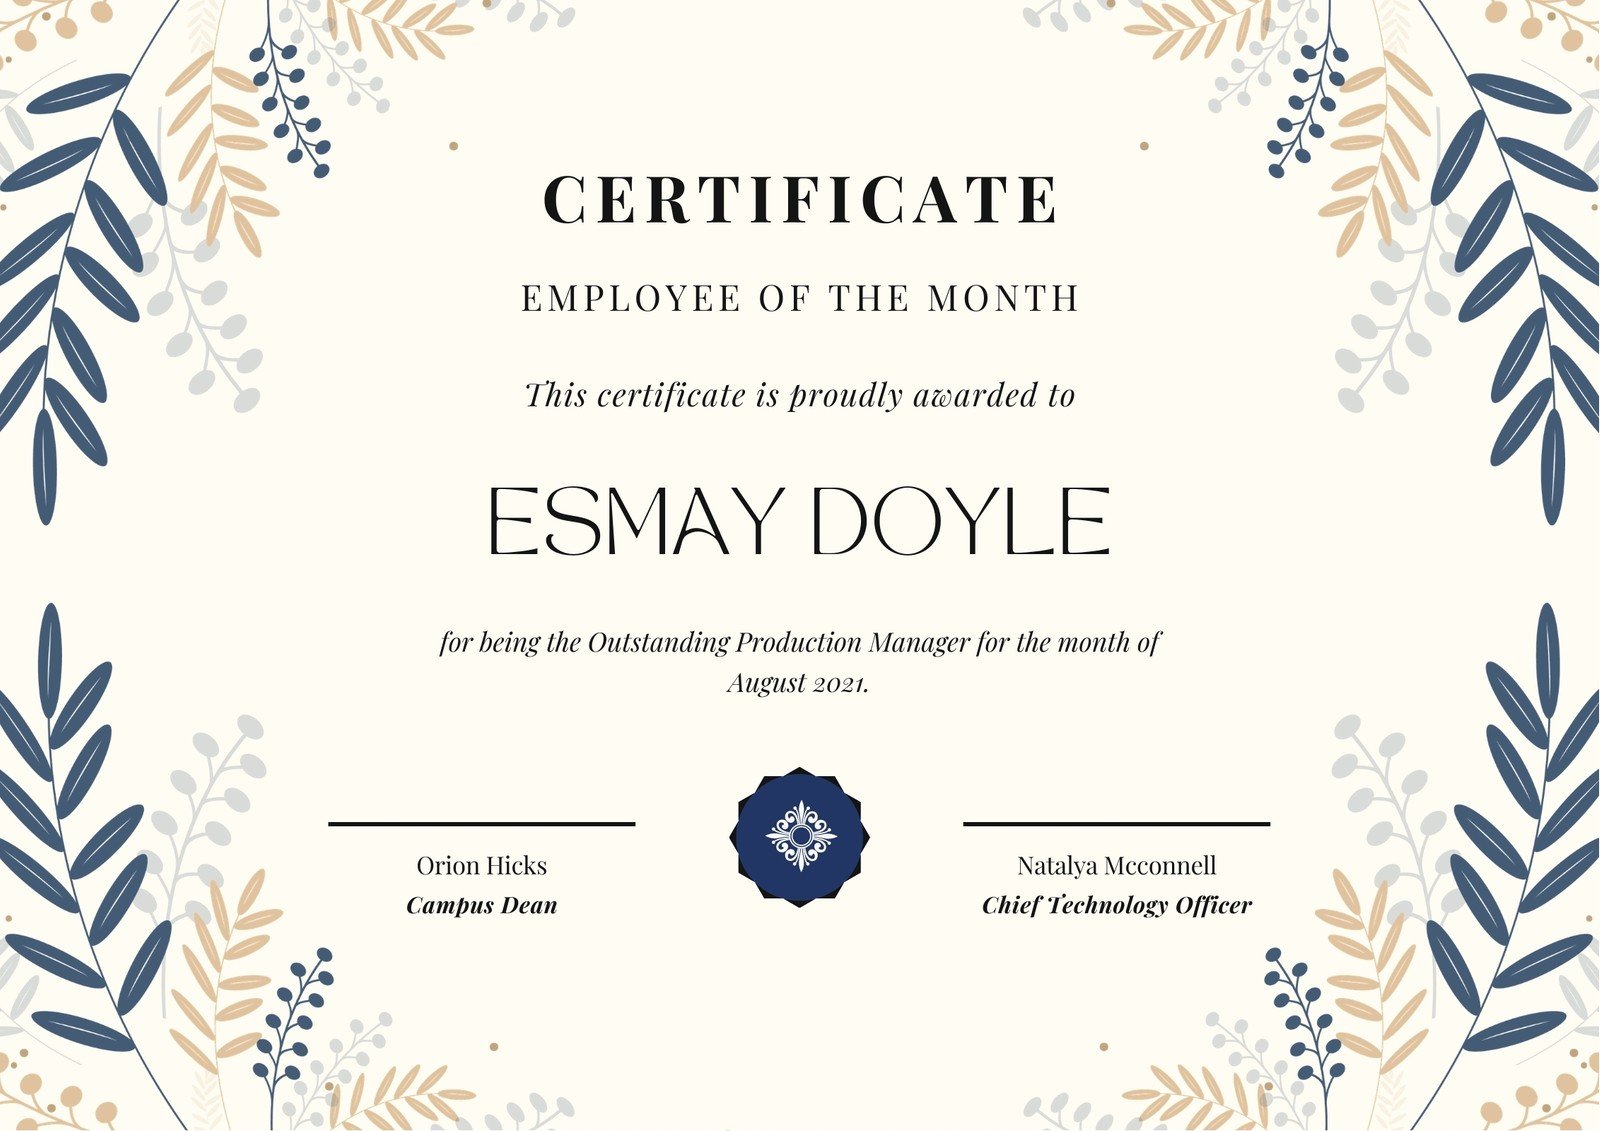 Free custom printable school certificate templates  Canva In School Certificate Templates Free